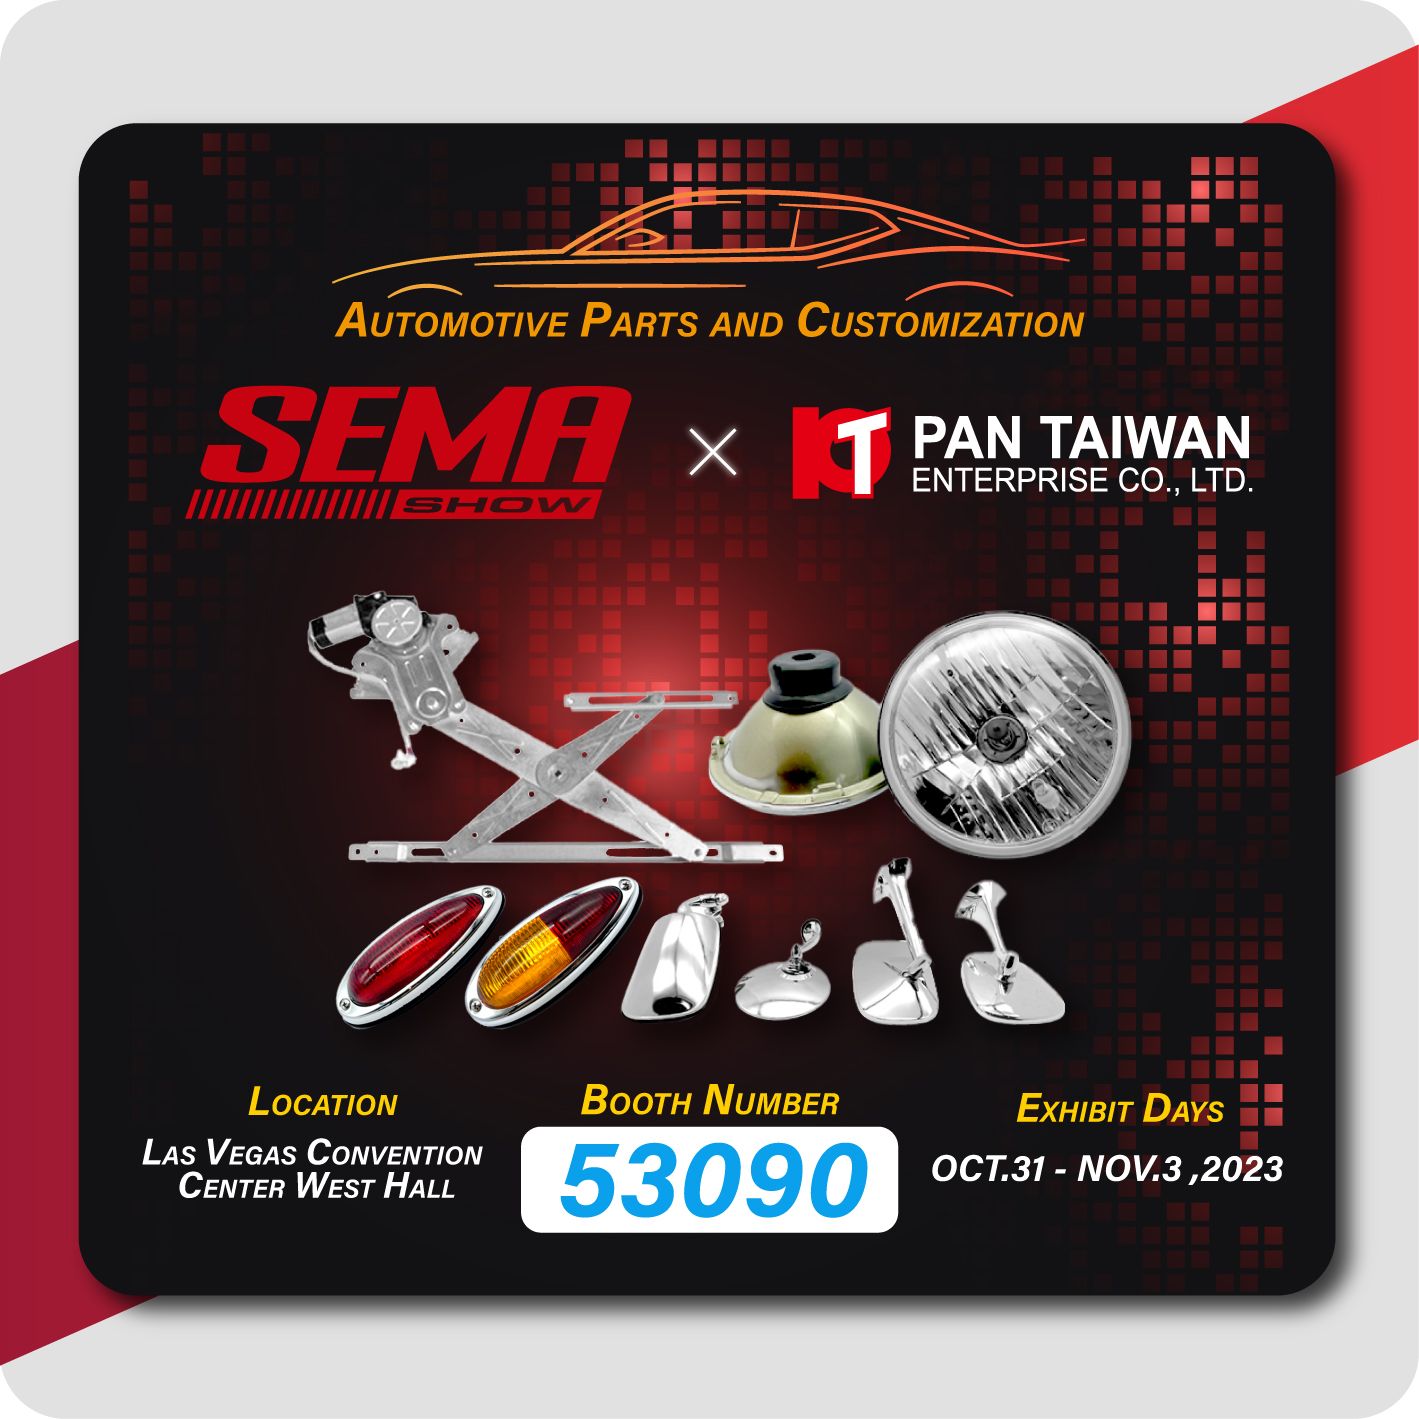 Pan Taiwan משתתפת ב-SEMA 2023 ומדגימה את מוצרי החלונות שלנו, חלקי רכב קלאסיים, ושירות מותאם אישית לשני סוגי הרכבים - רכבים רגילים ורכבים היברידיים חשמליים לכל לקוחותינו.